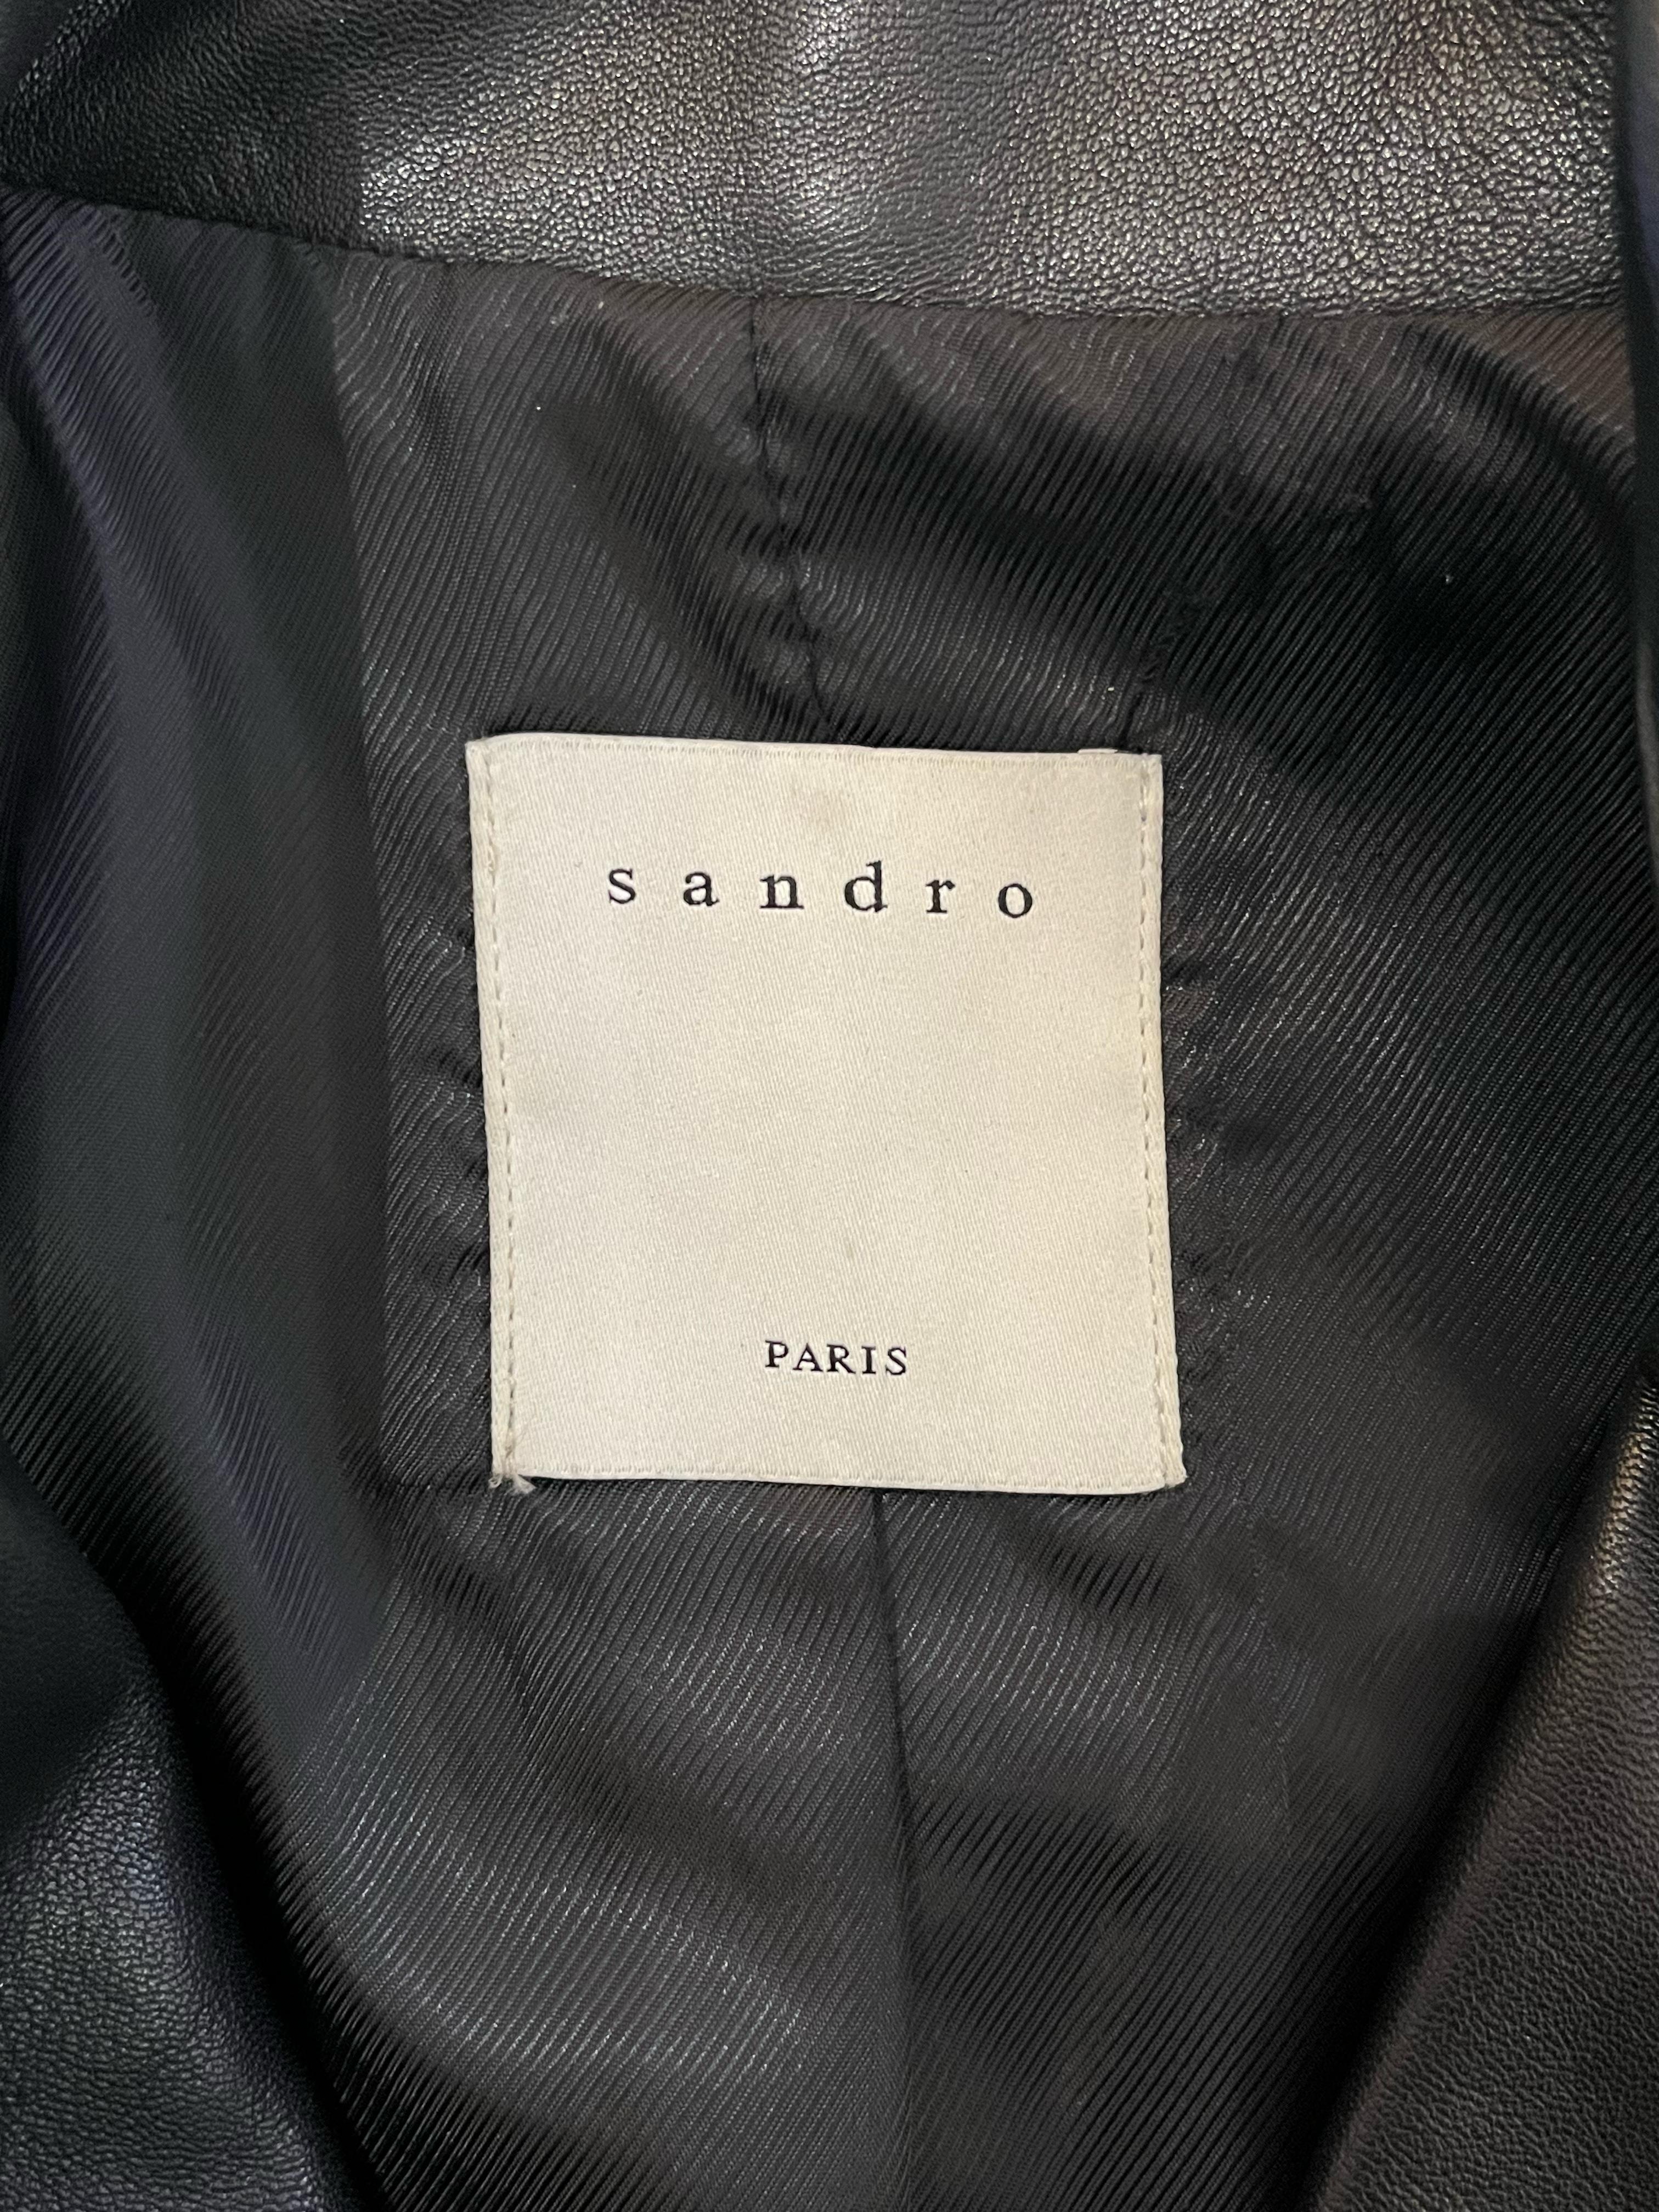 Sandro Leather Biker Jacket For Sale 2